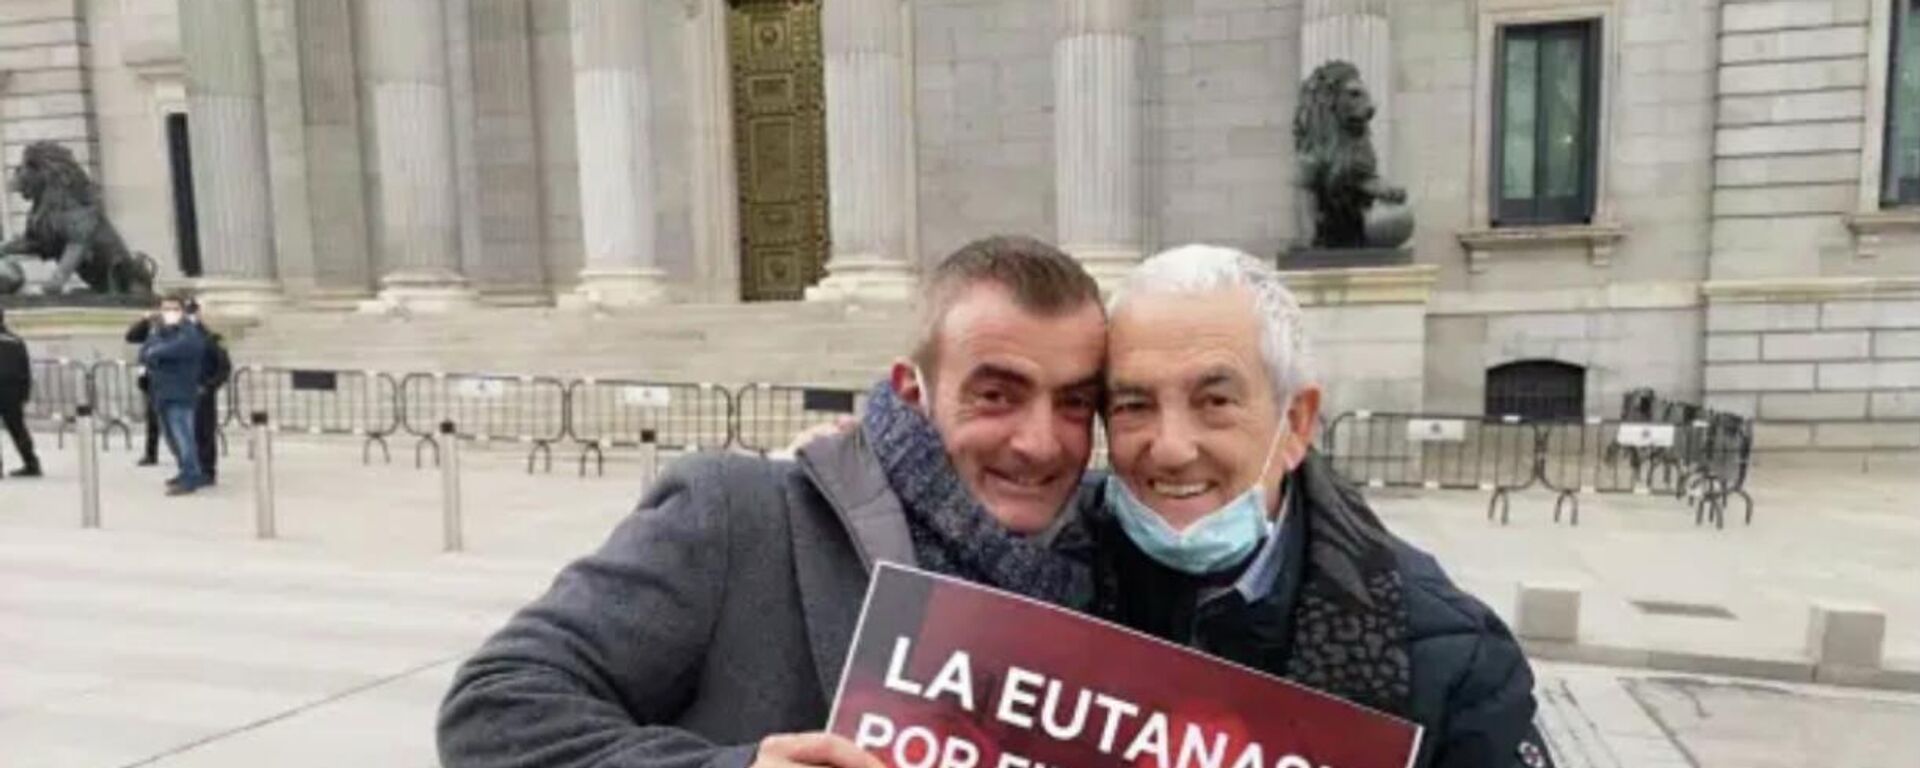 Txema Lorente y su hijo en la puerta del Congreso de los Diputados en Madrid - Sputnik Mundo, 1920, 18.03.2021